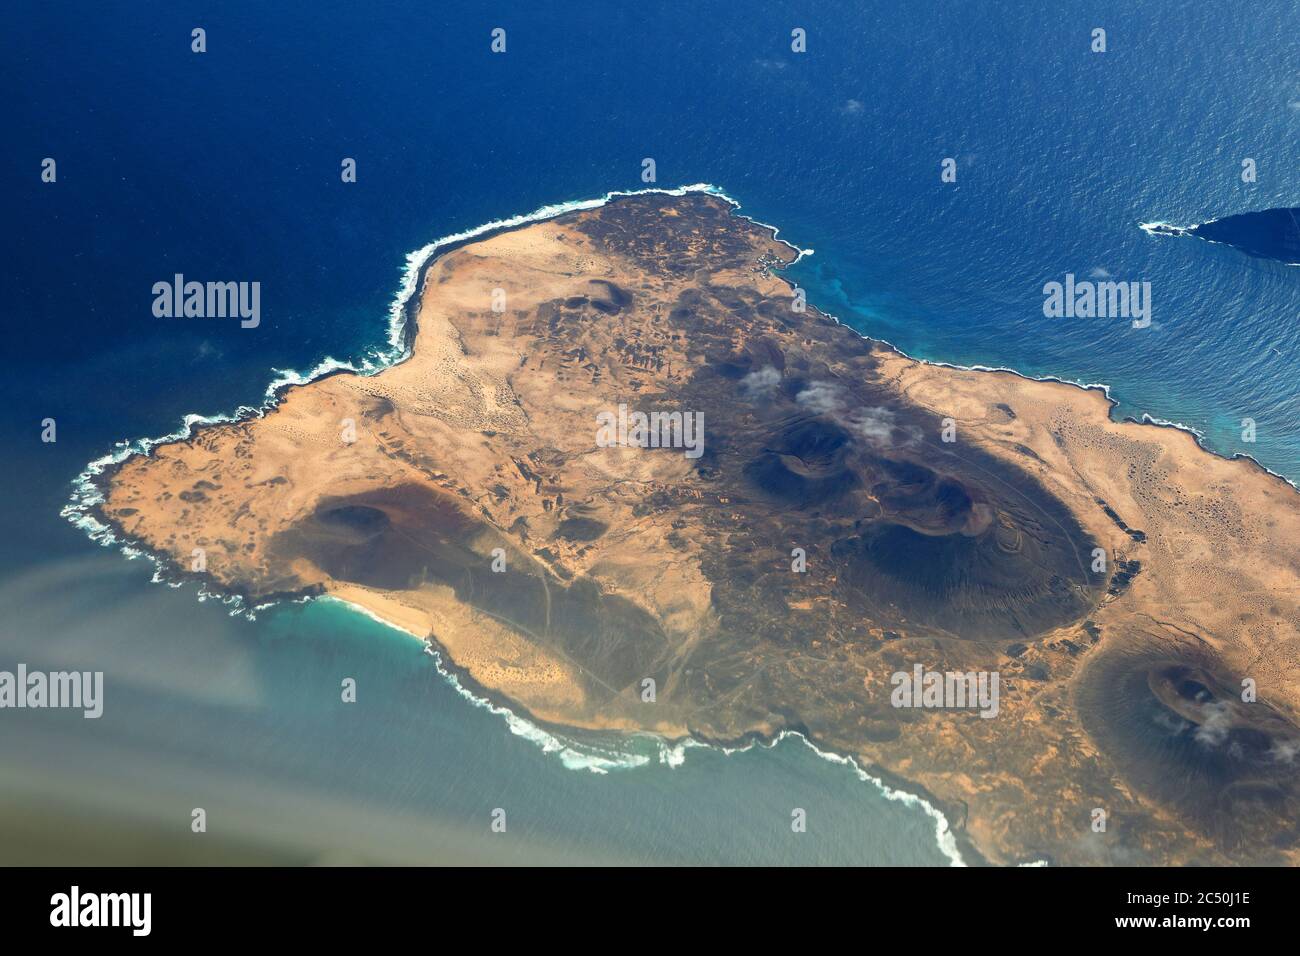 île la Graciosa, partie nord, vue aérienne, îles Canaries, la Graciosa Banque D'Images